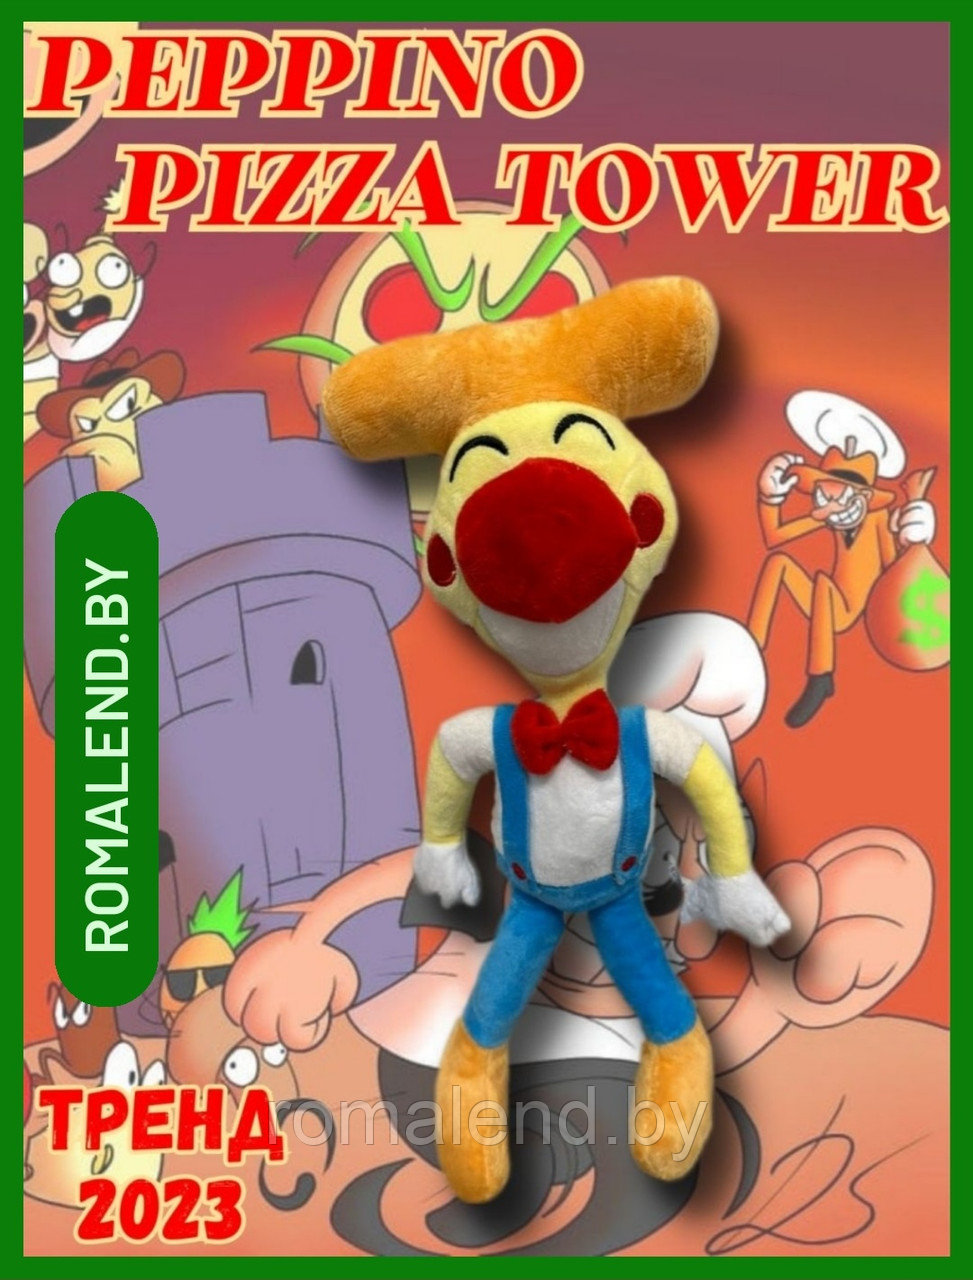 Мягкая игрушка Pizza Tower Пицца Товер оф банбан  38см.